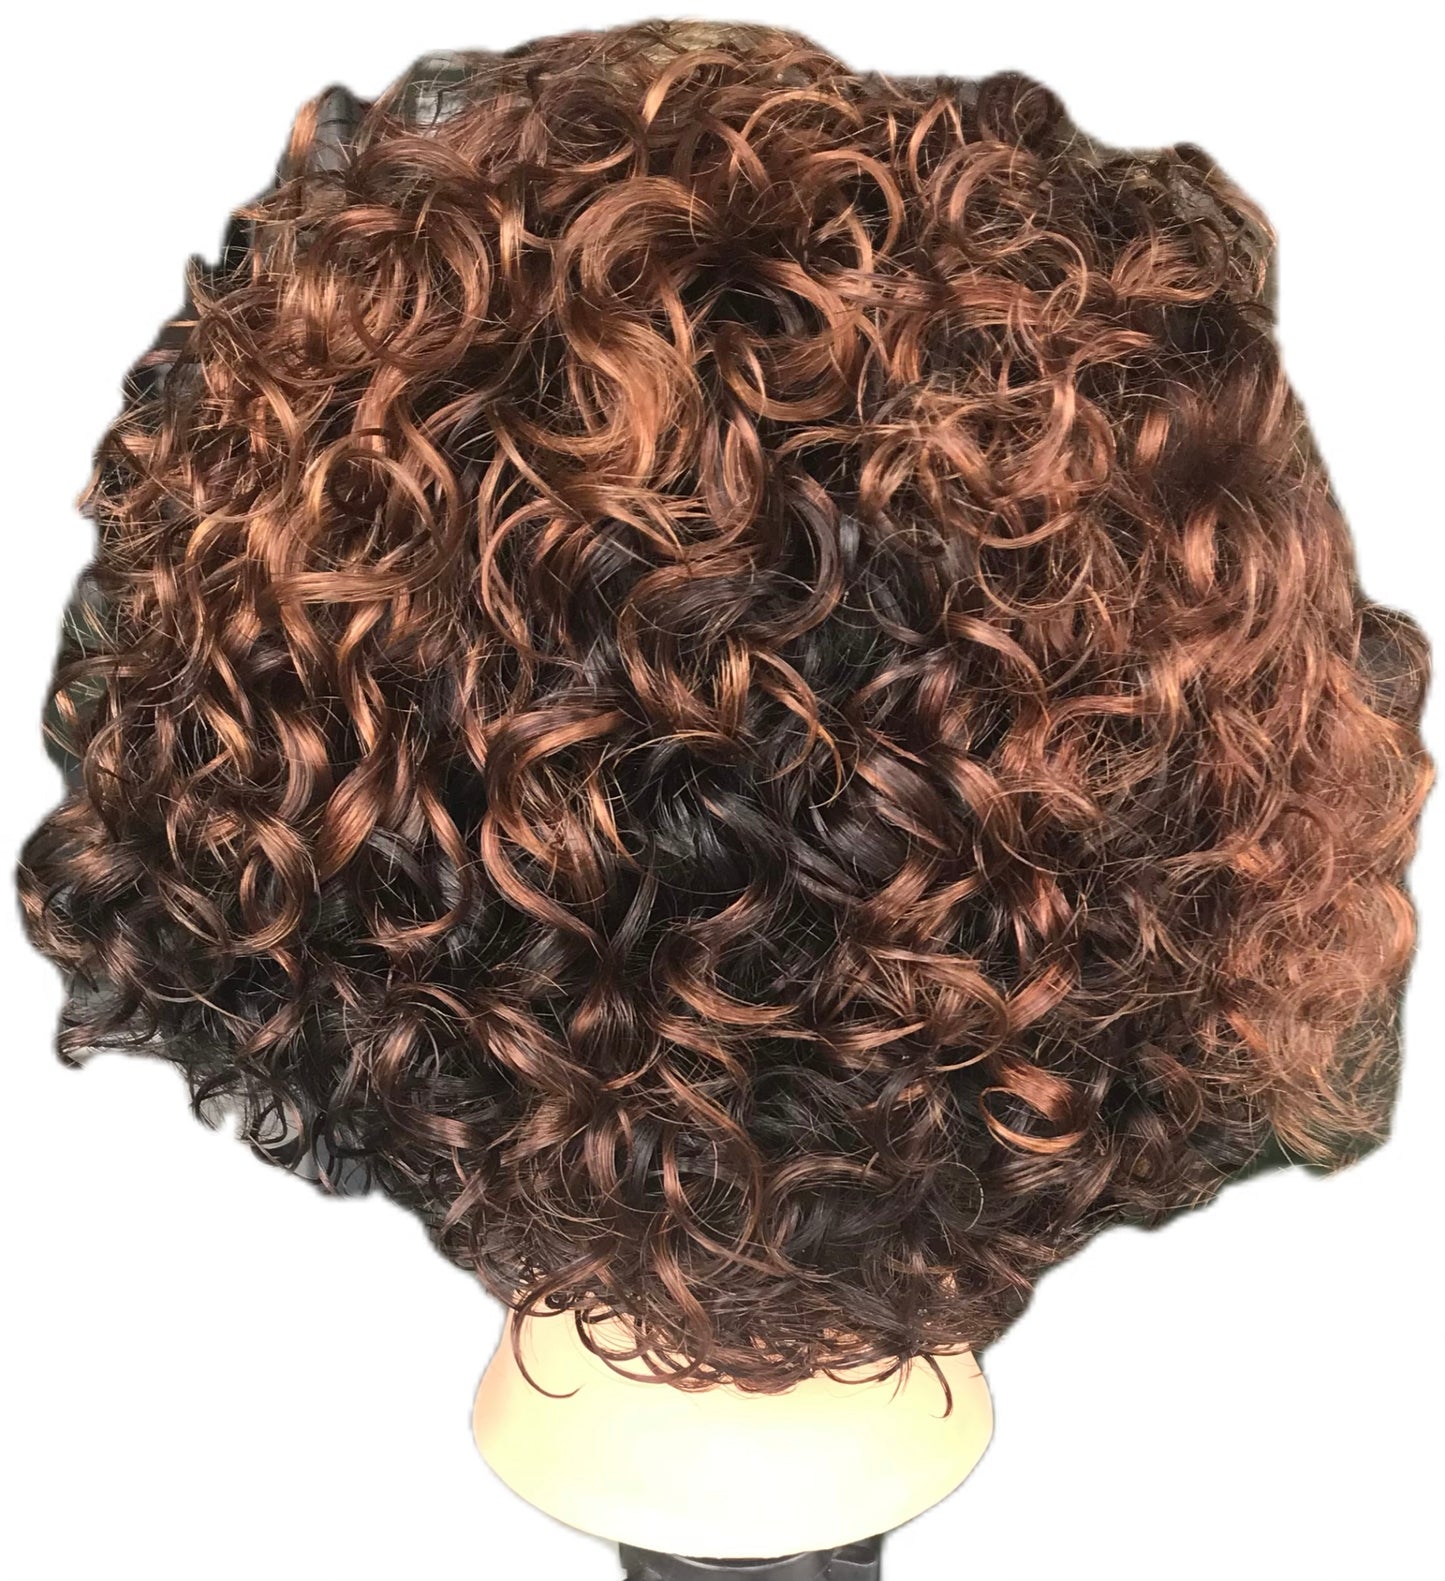 Perruque lace front frisés cheveux naturels brésiliens coupe courte